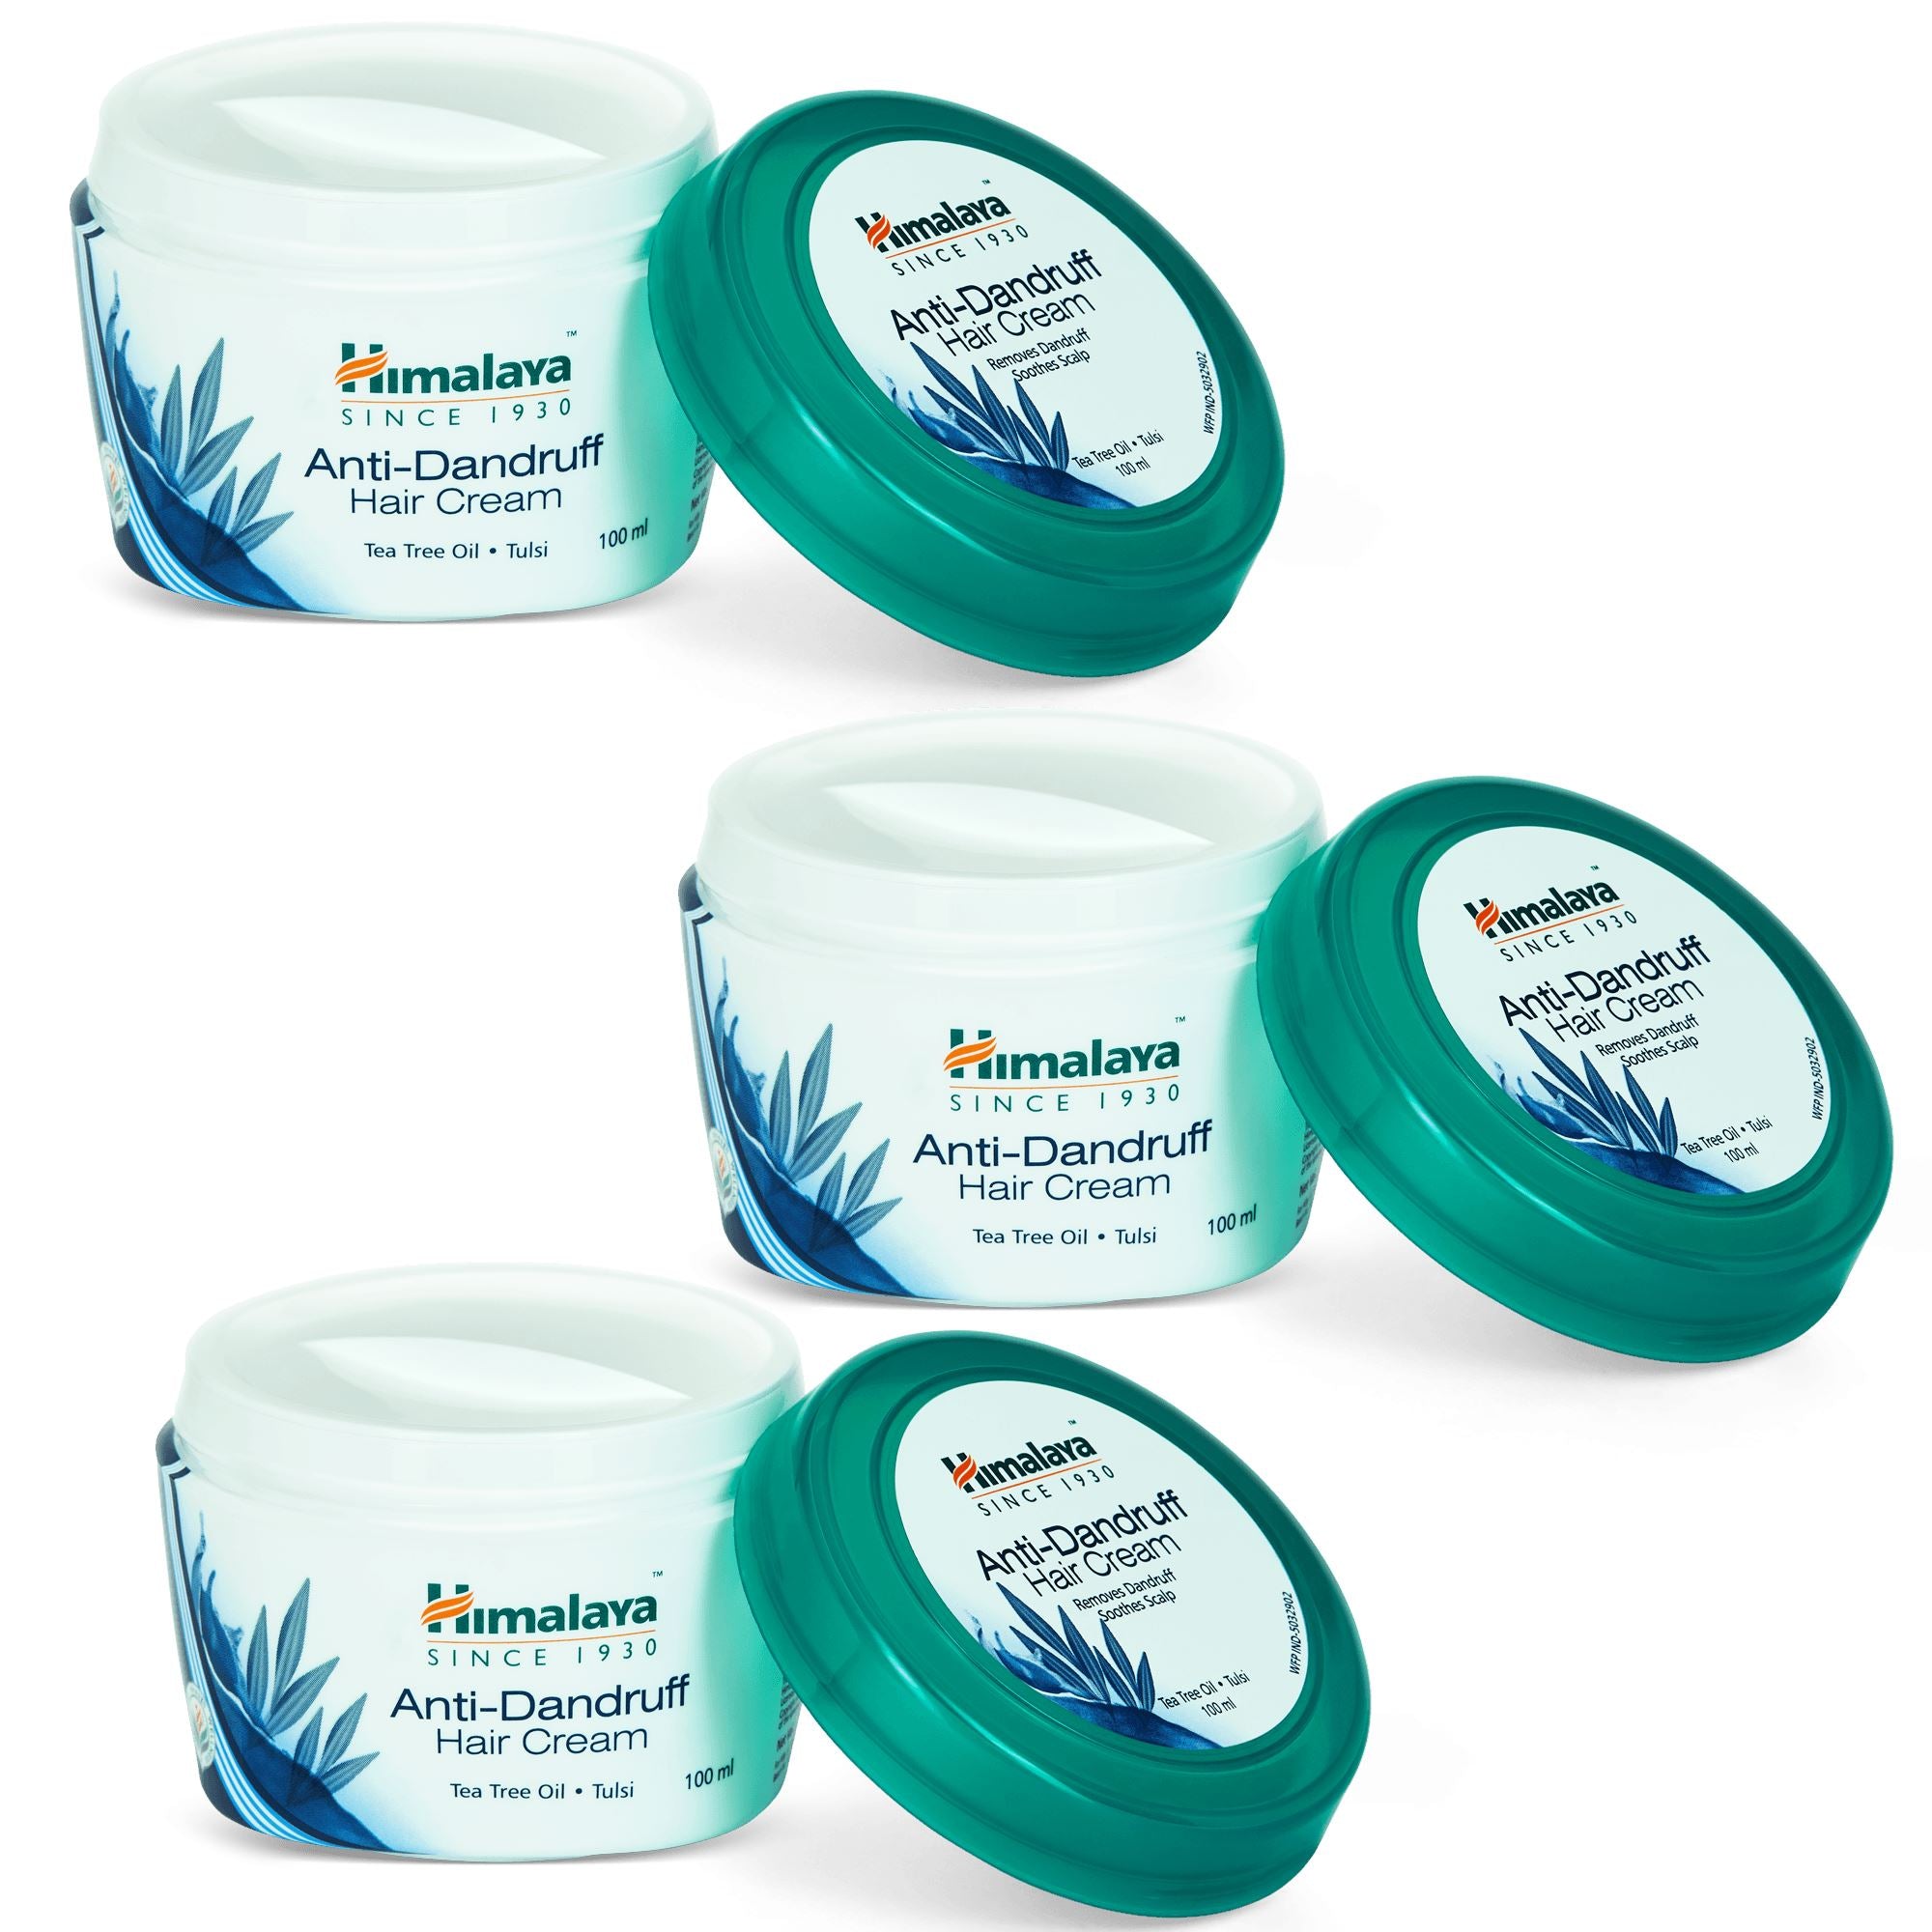 Himalaya Anti-Dandruff Hair Cream 100ml (Pack of 3) - Removes dandruff, nourishes scalp